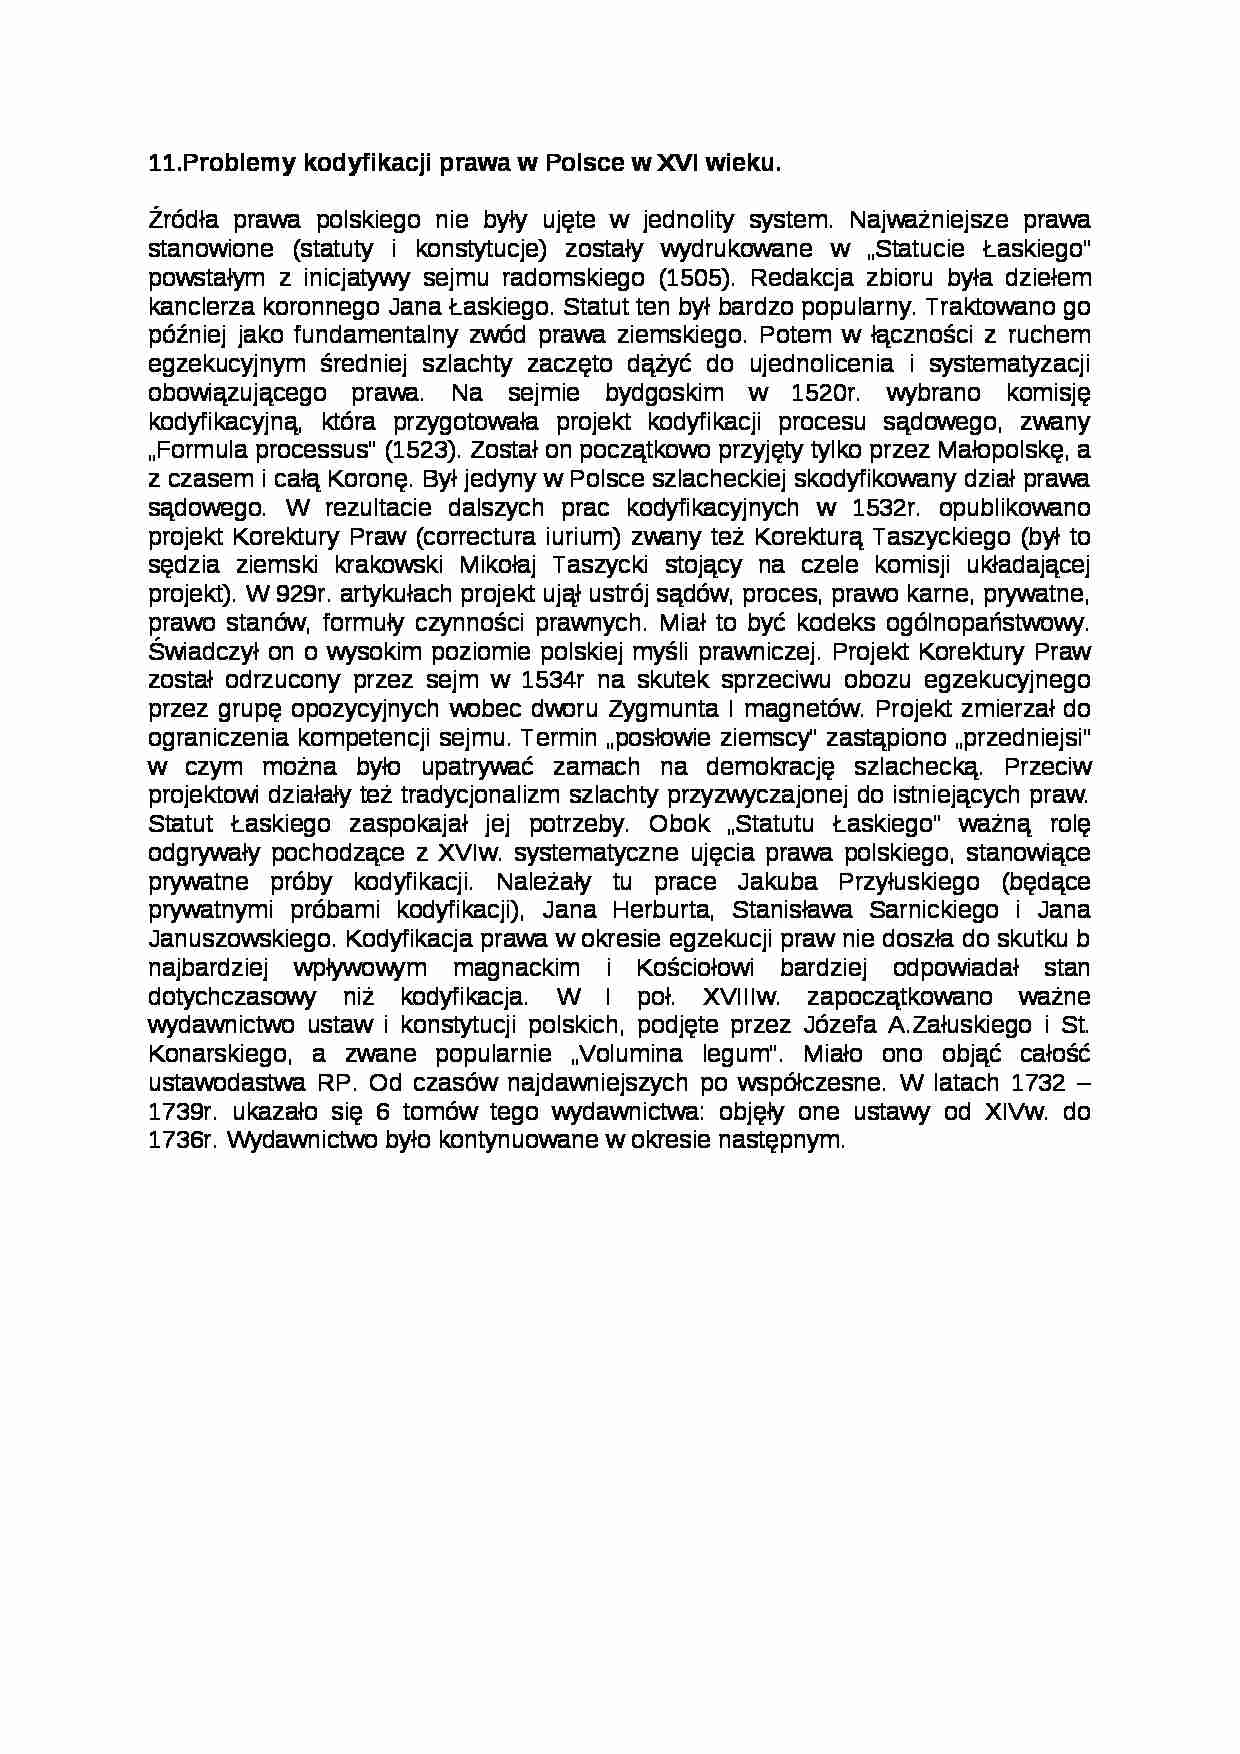 Problemy kodyfikacji prawa w Polsce w XVI wieku. - Prawo  - strona 1